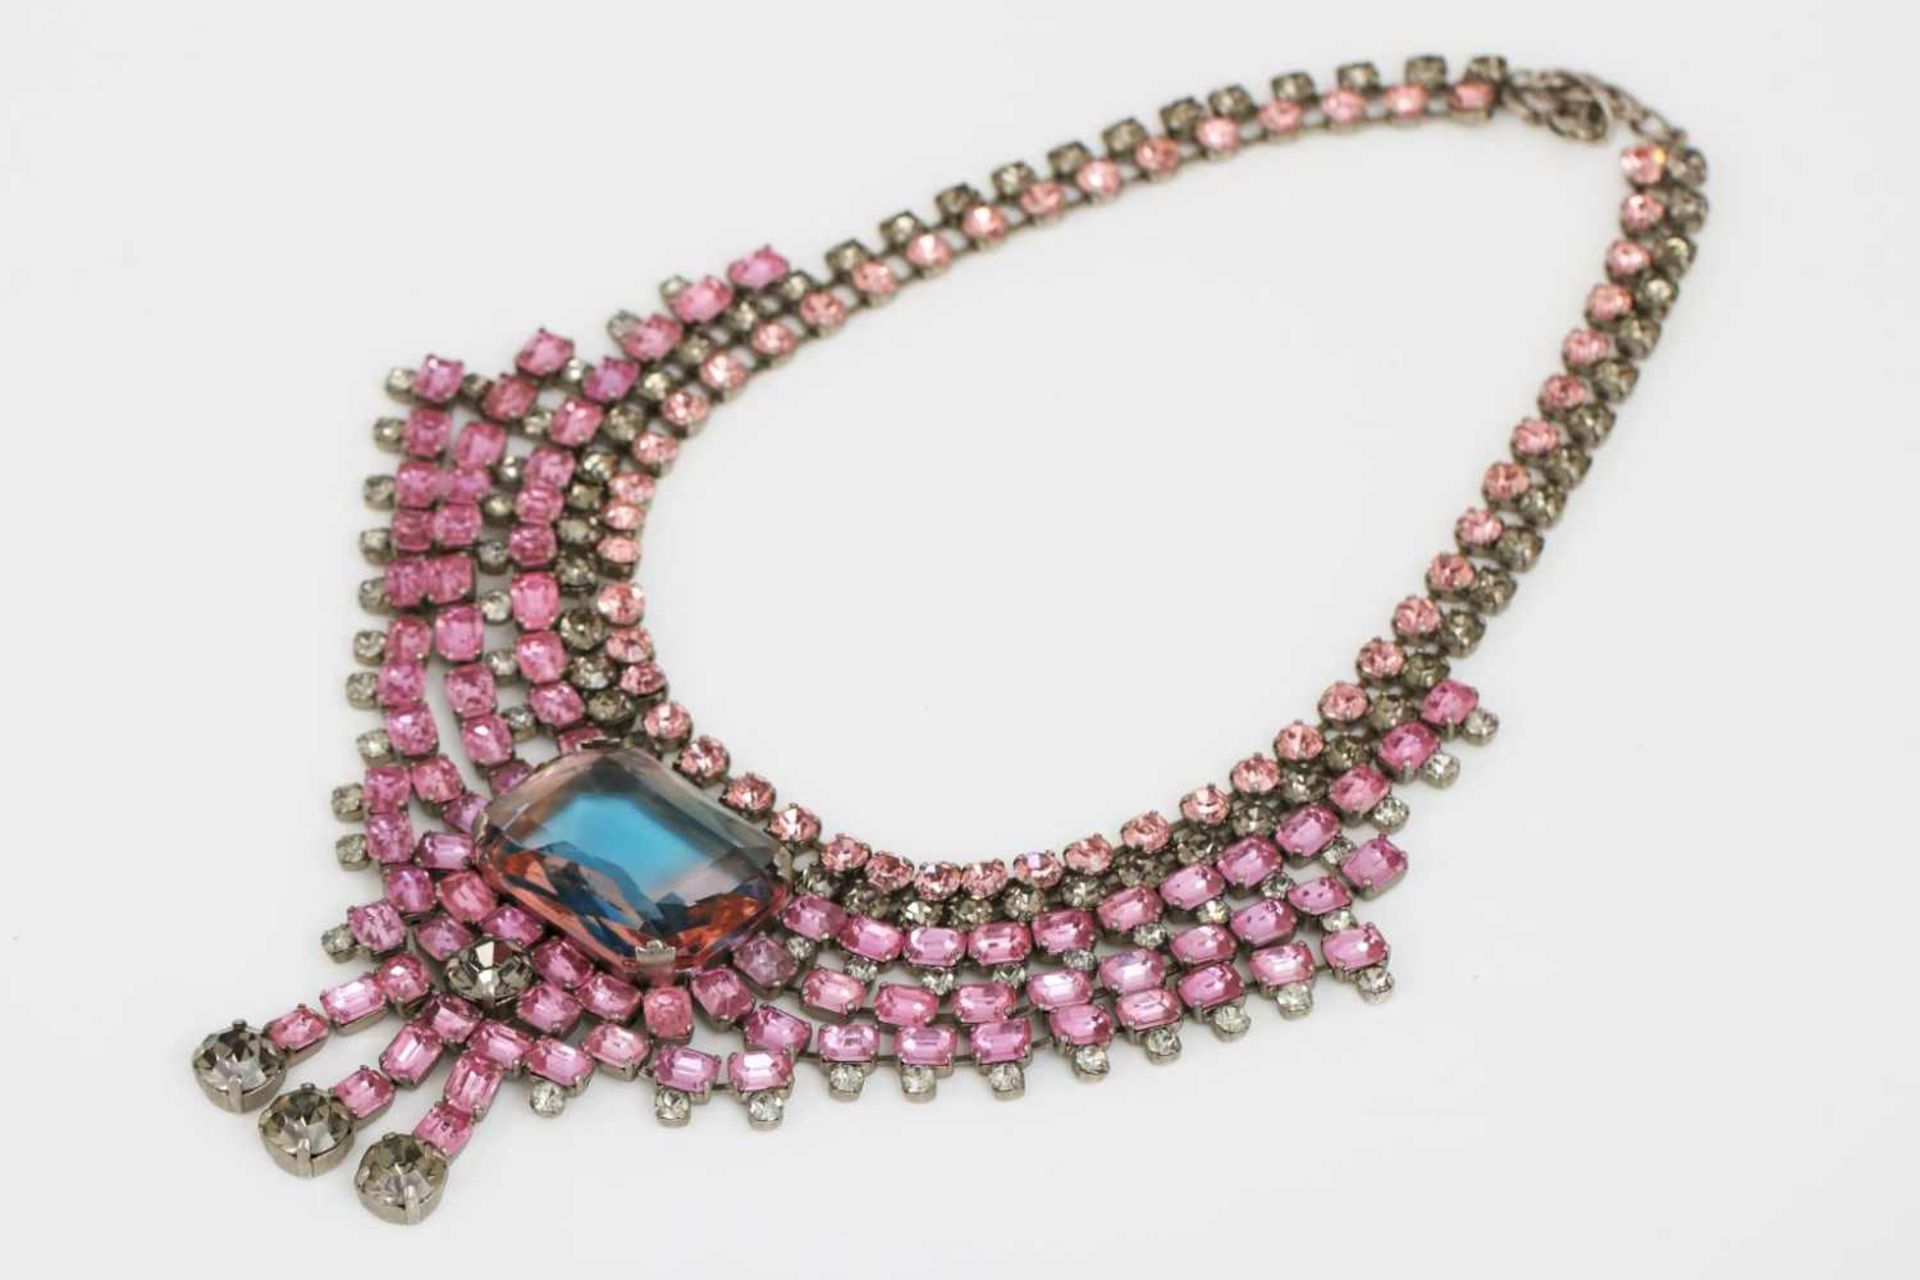 Collier DENAIVE PARISModeschmuck, vintage, um 1940, rosa und gräuliche Strasssteine, mittig ein